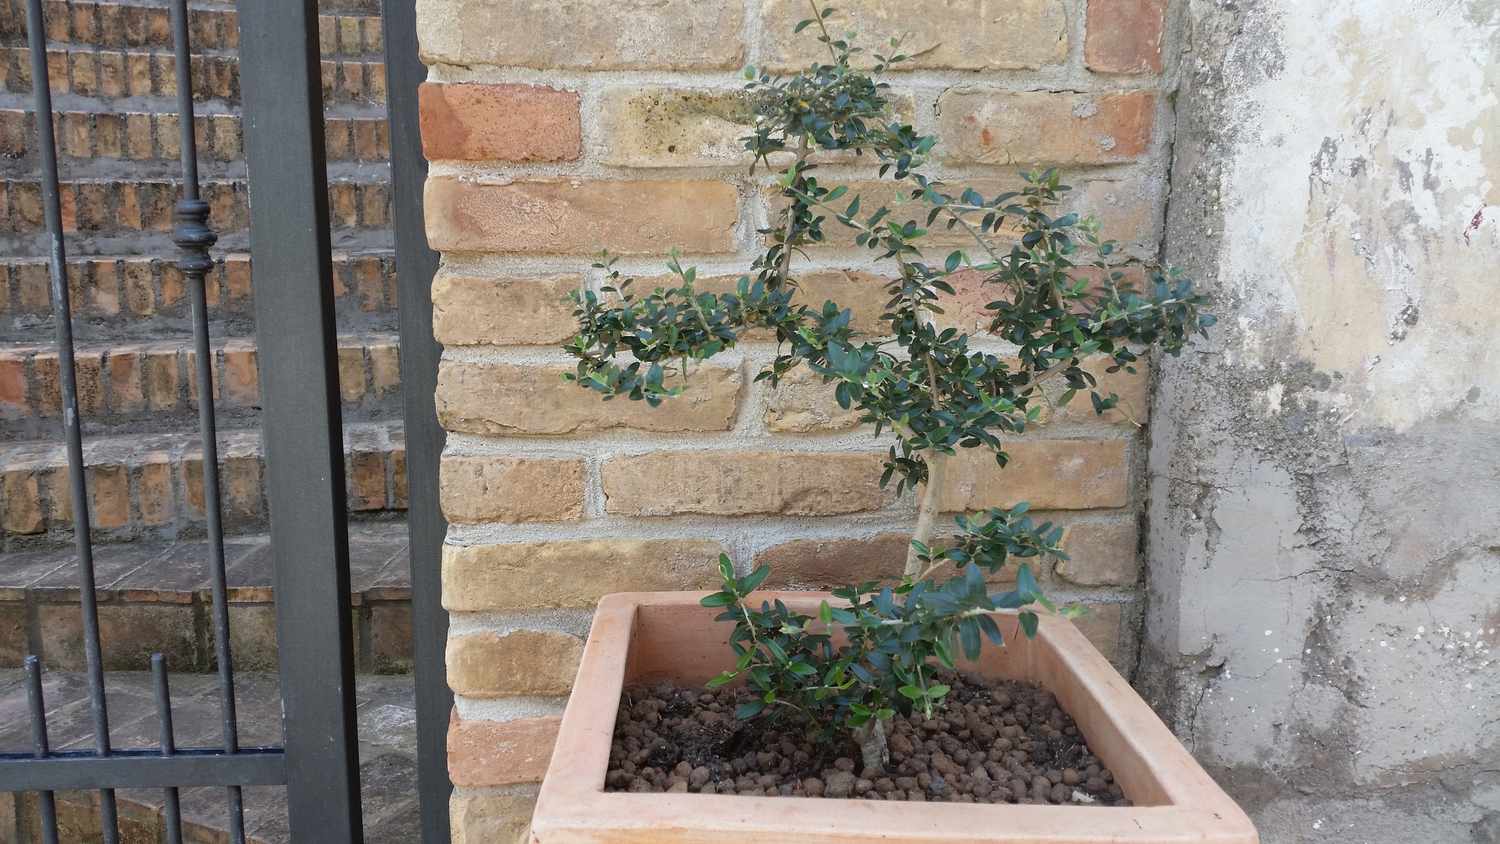 Joven olivo arbequina en una jardinera